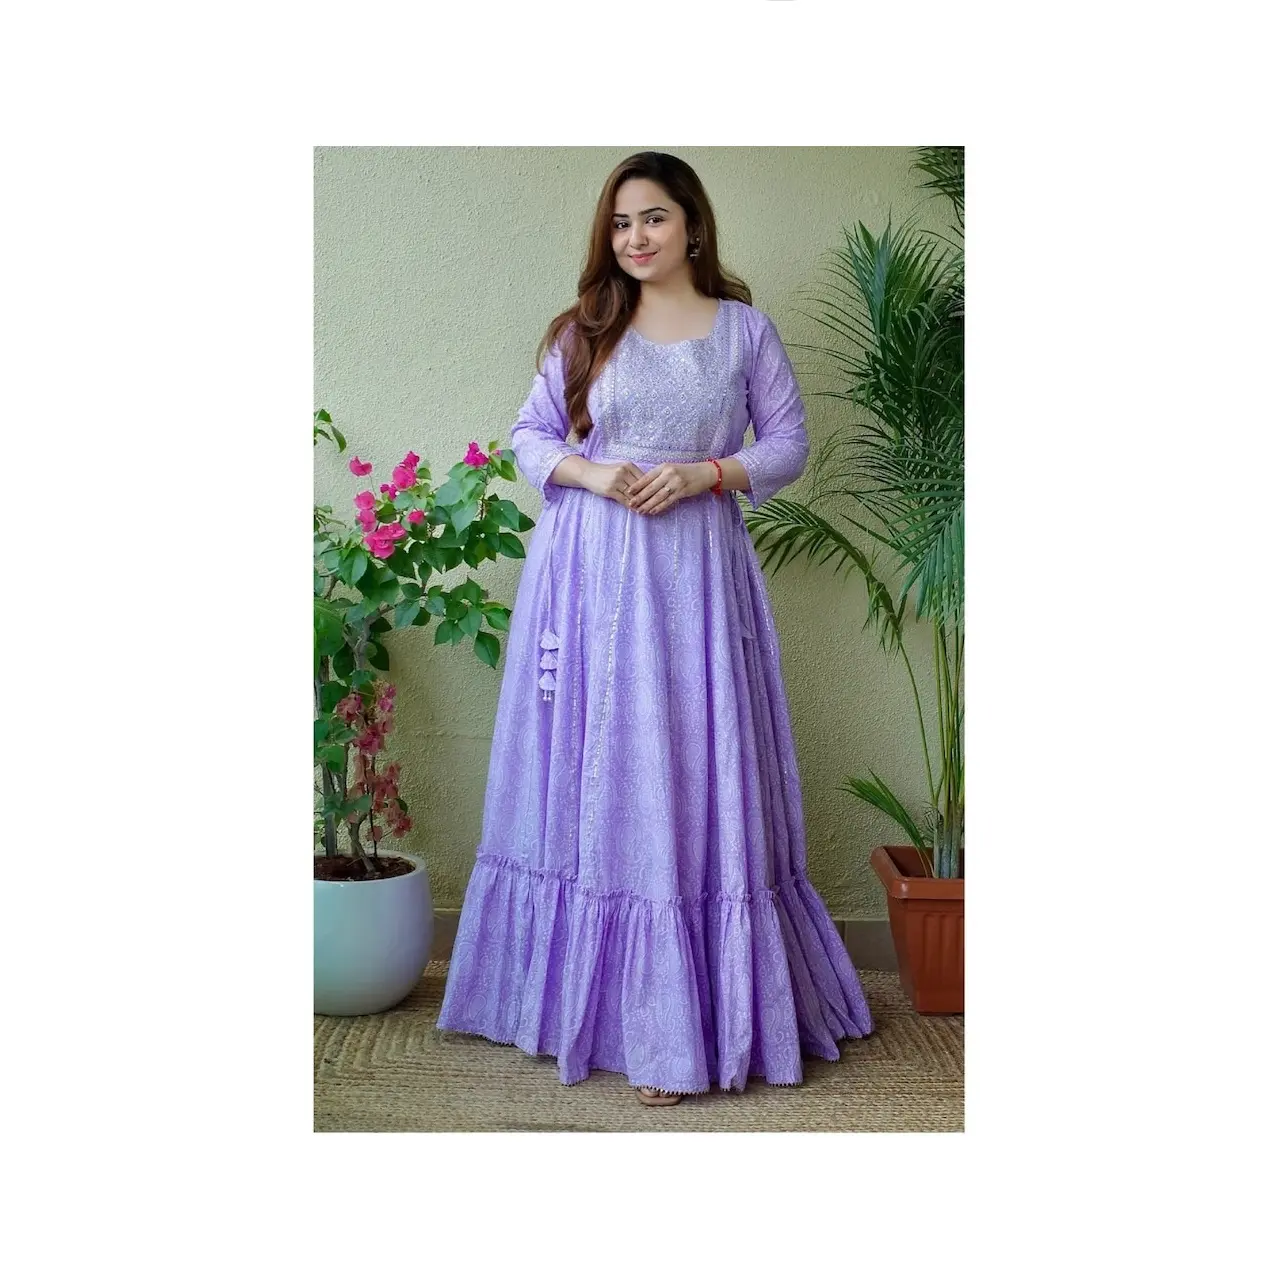 Yeni Modern tasarım Rayon kumaş kadın giyim Kurti parti giyim için hindistan'dan toptan fiyata mevcut